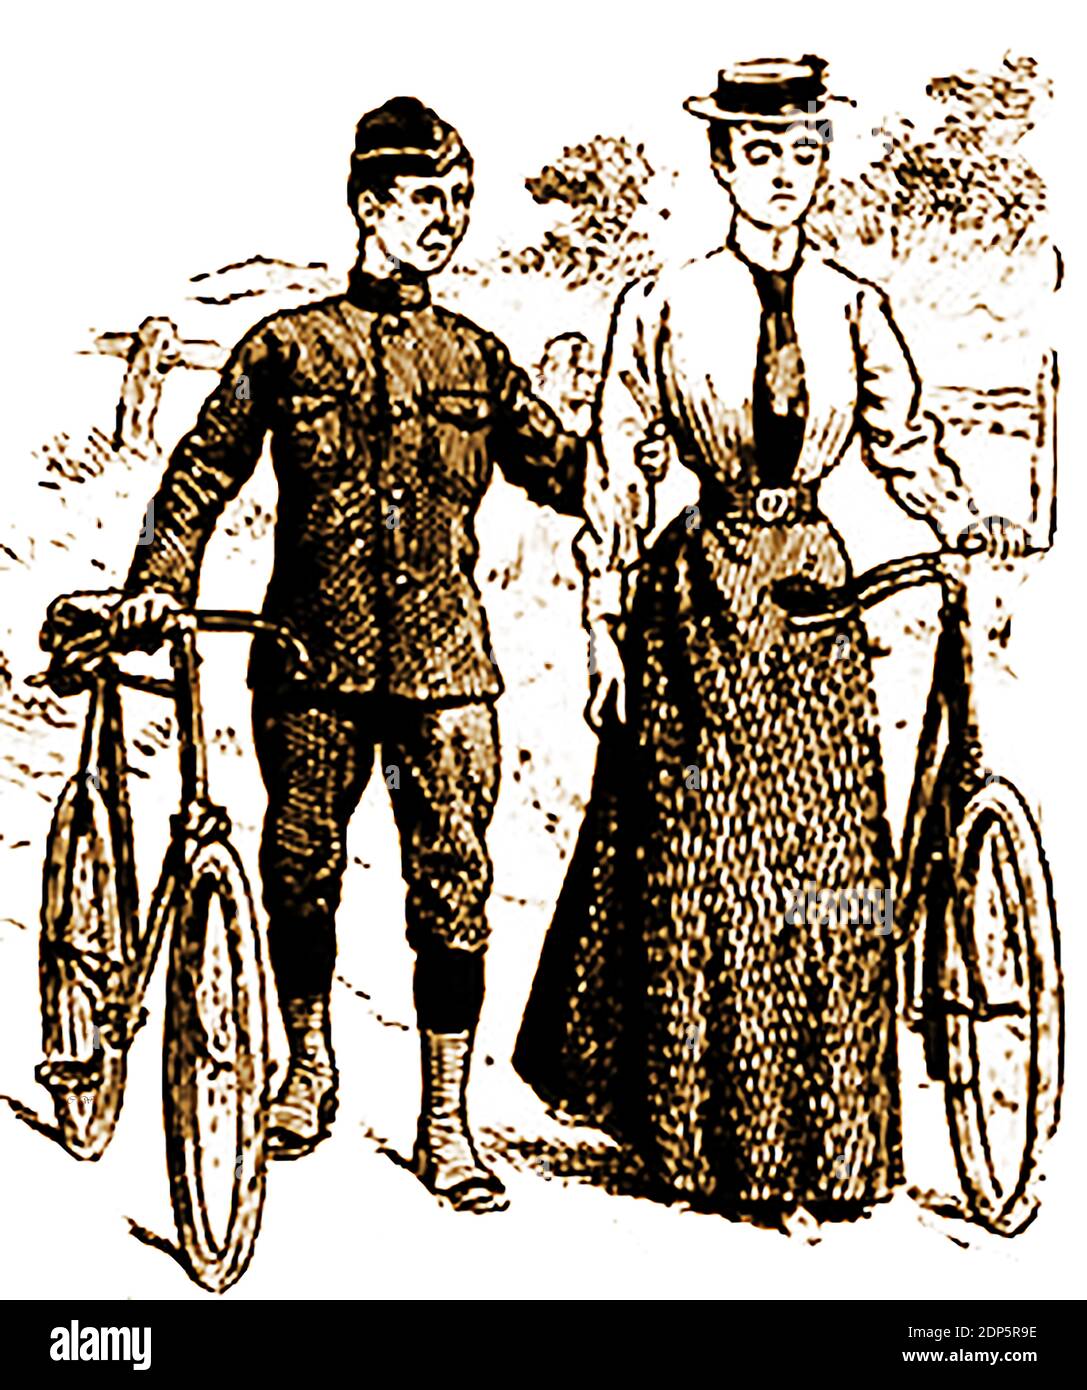 Großbritannien im Jahr 1900. Polizei Fahrräder die Verwendung von Fahrrädern durch die Polizei (einschließlich Dreiräder) begann in den späten 1890er Jahren. Cycles ermöglichte es dem Polizisten, in beiden Städten und auf dem Land zu patrouillieren. Frauen auf dem Fahrrad wurden als "unladylike" angesehen und die neu gebildete Fahrradpolizei verhaftete sie oft wegen gefährlichen Radfahrens, um sie zu entmutigen. Stockfoto